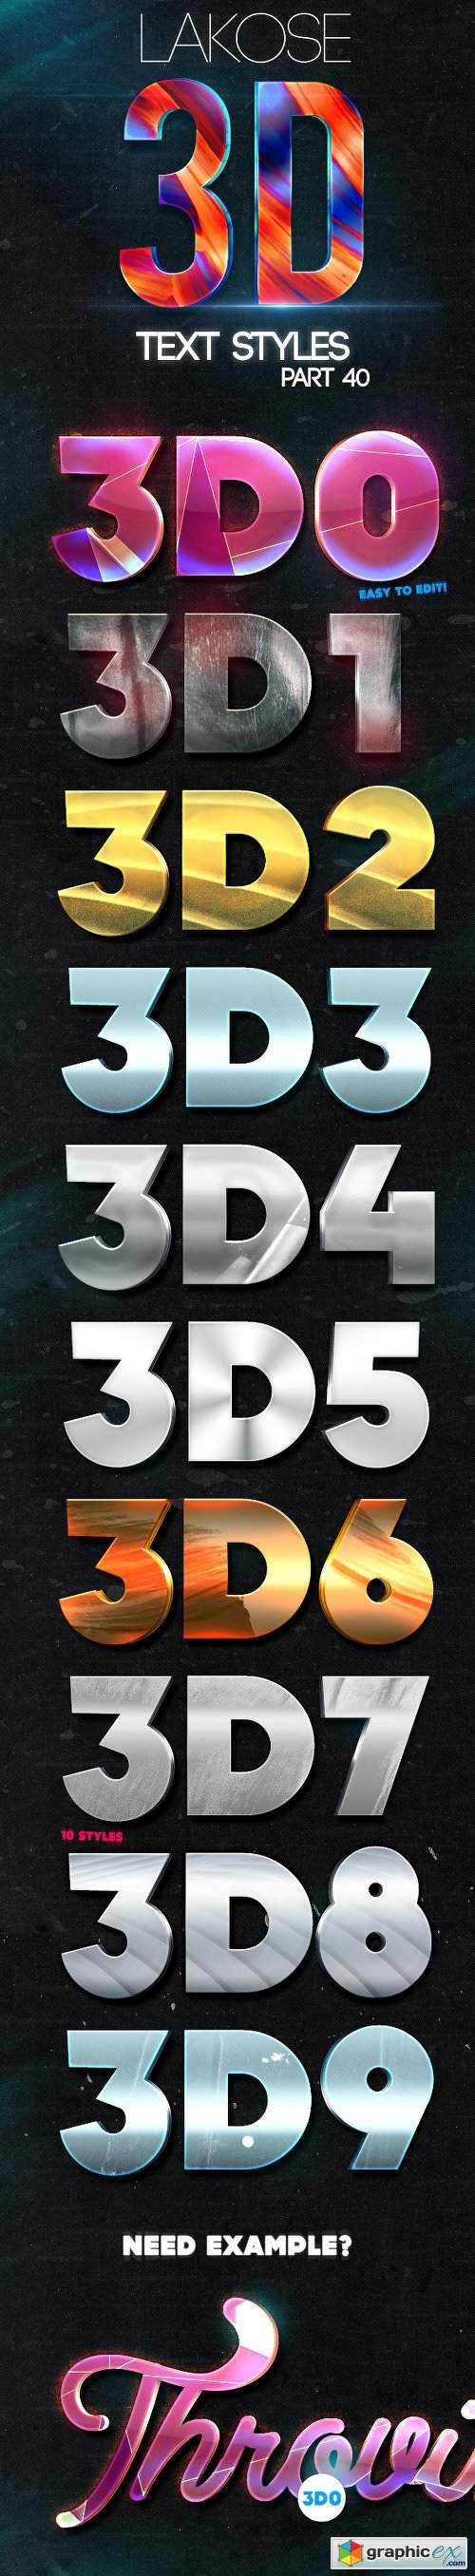 Lakose 3D Text Styles Part 40